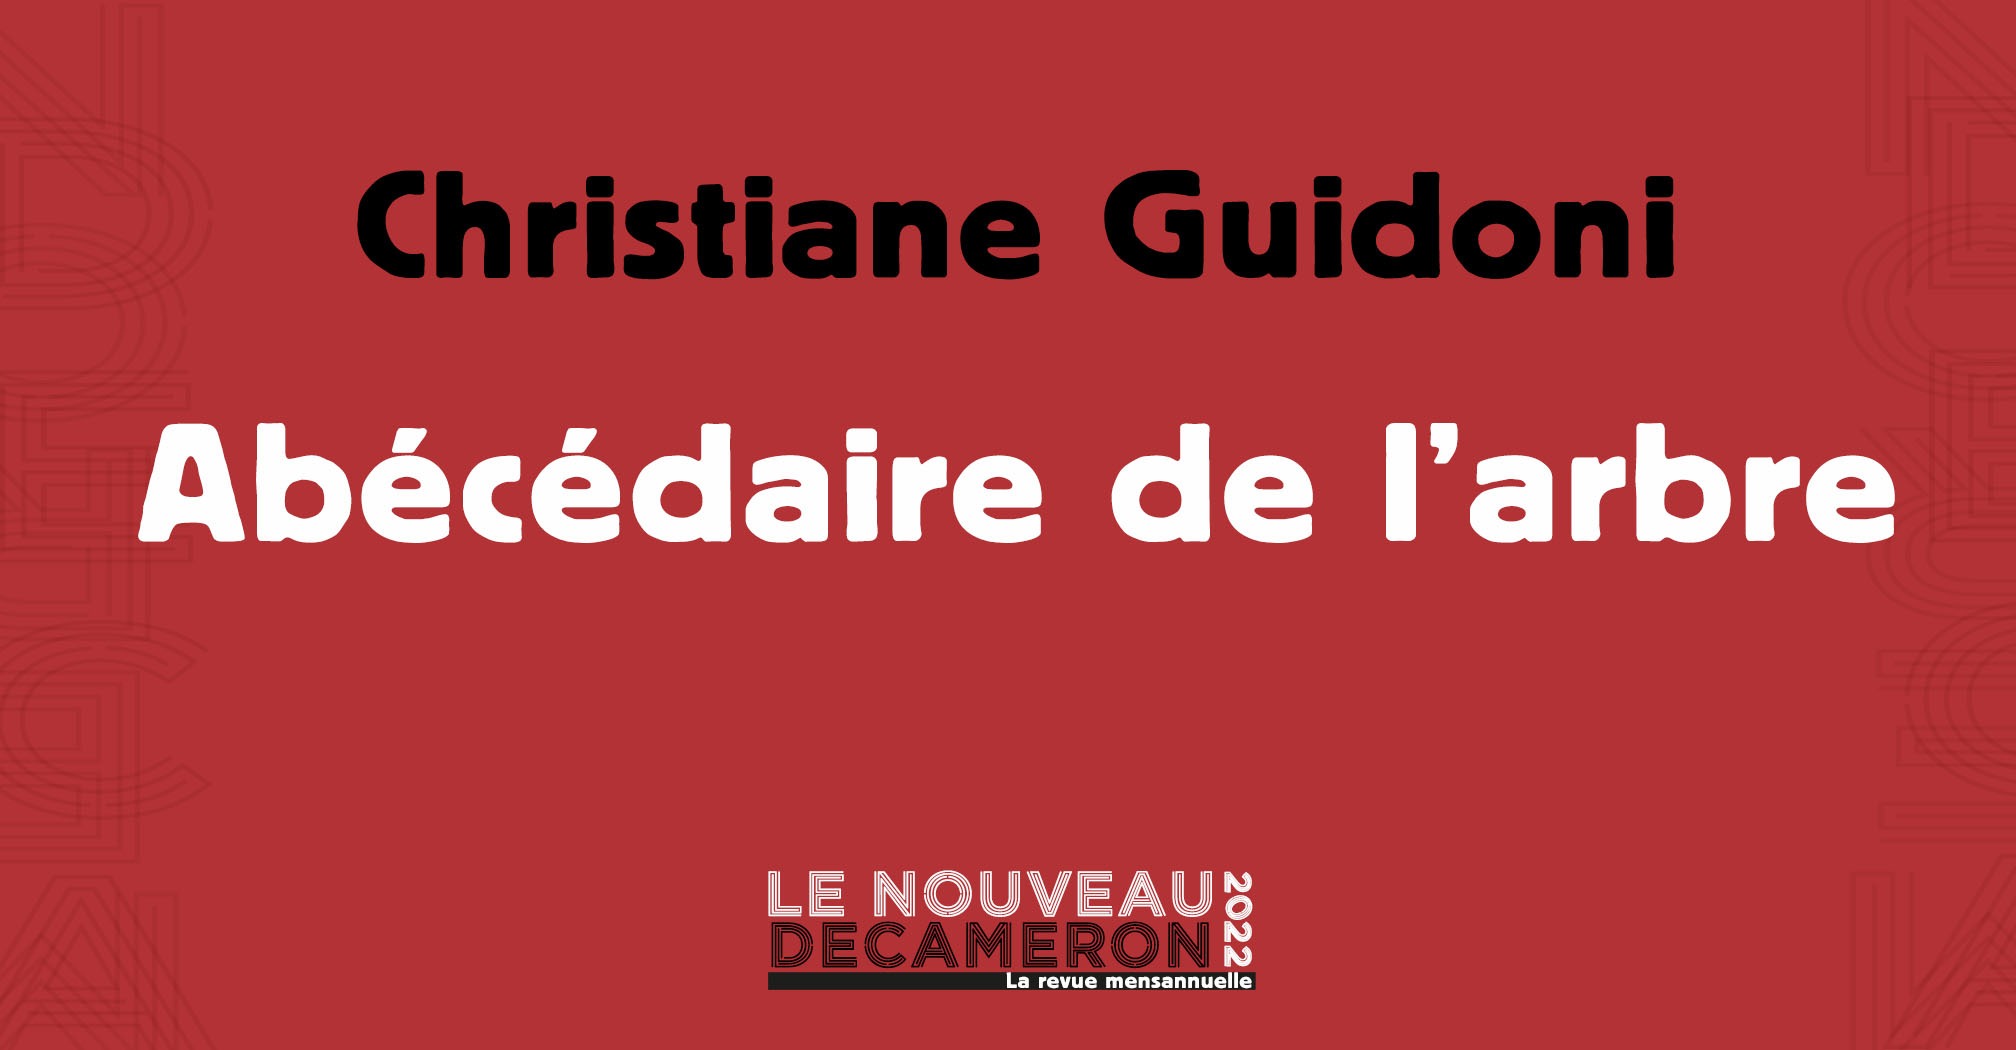 Christiane Guidoni - Abécédaire de l'arbre